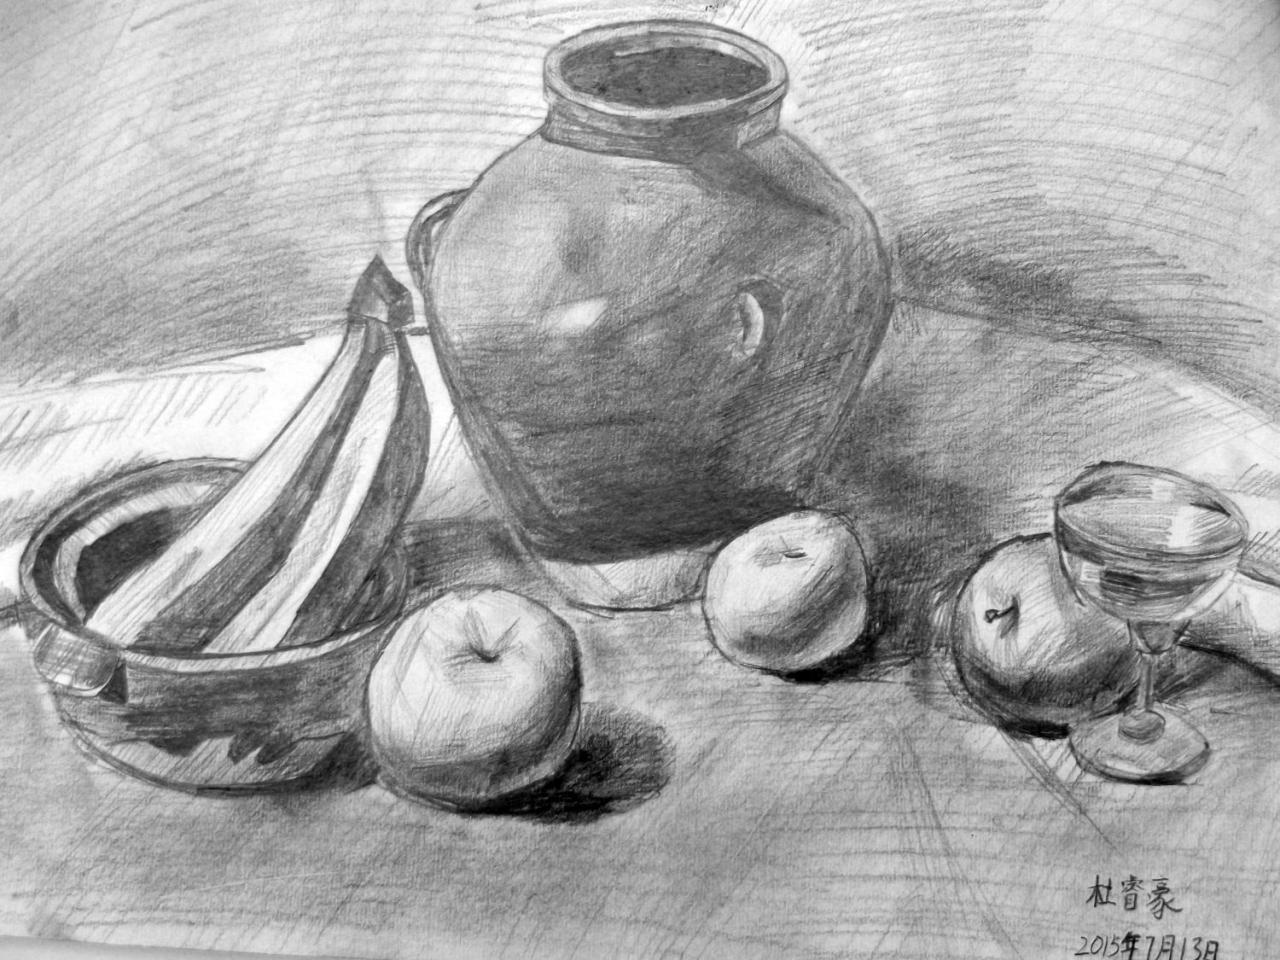 坛子、香蕉、苹果、水杯 静物素描 杜睿豪画